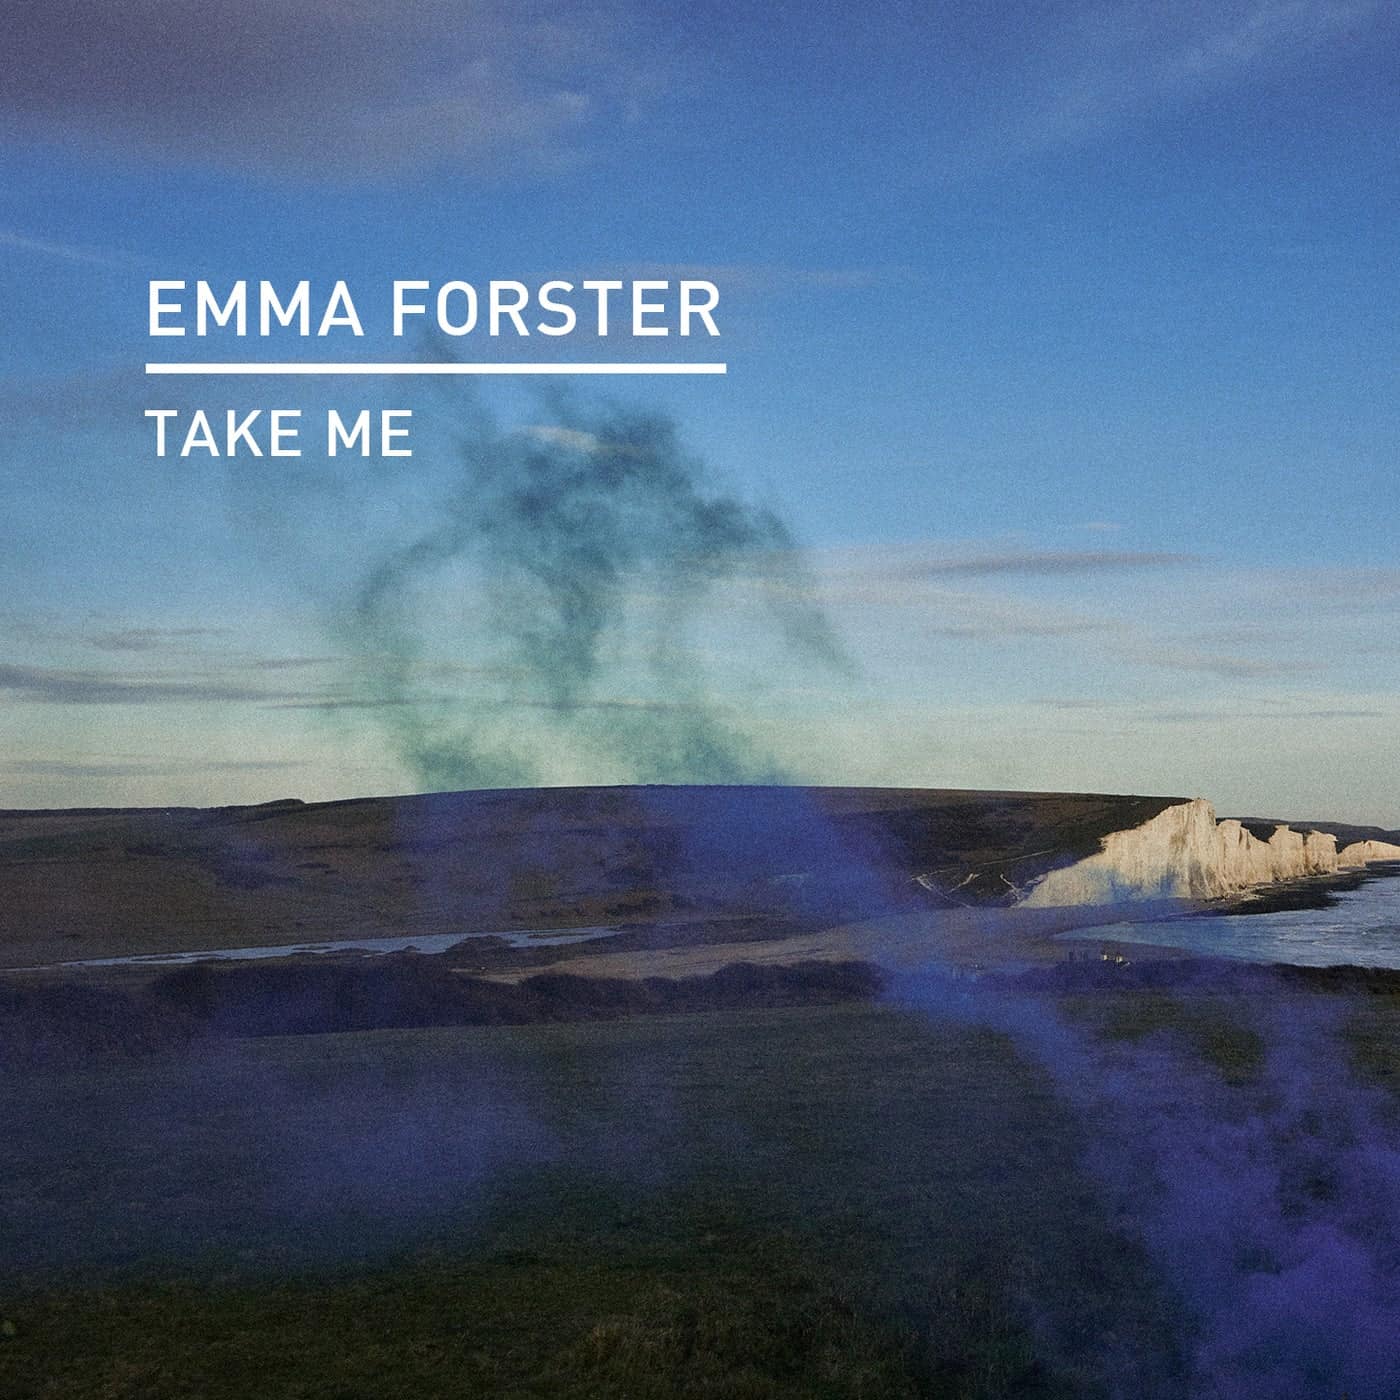 Download Emma Forster - Take Me on Electrobuzz